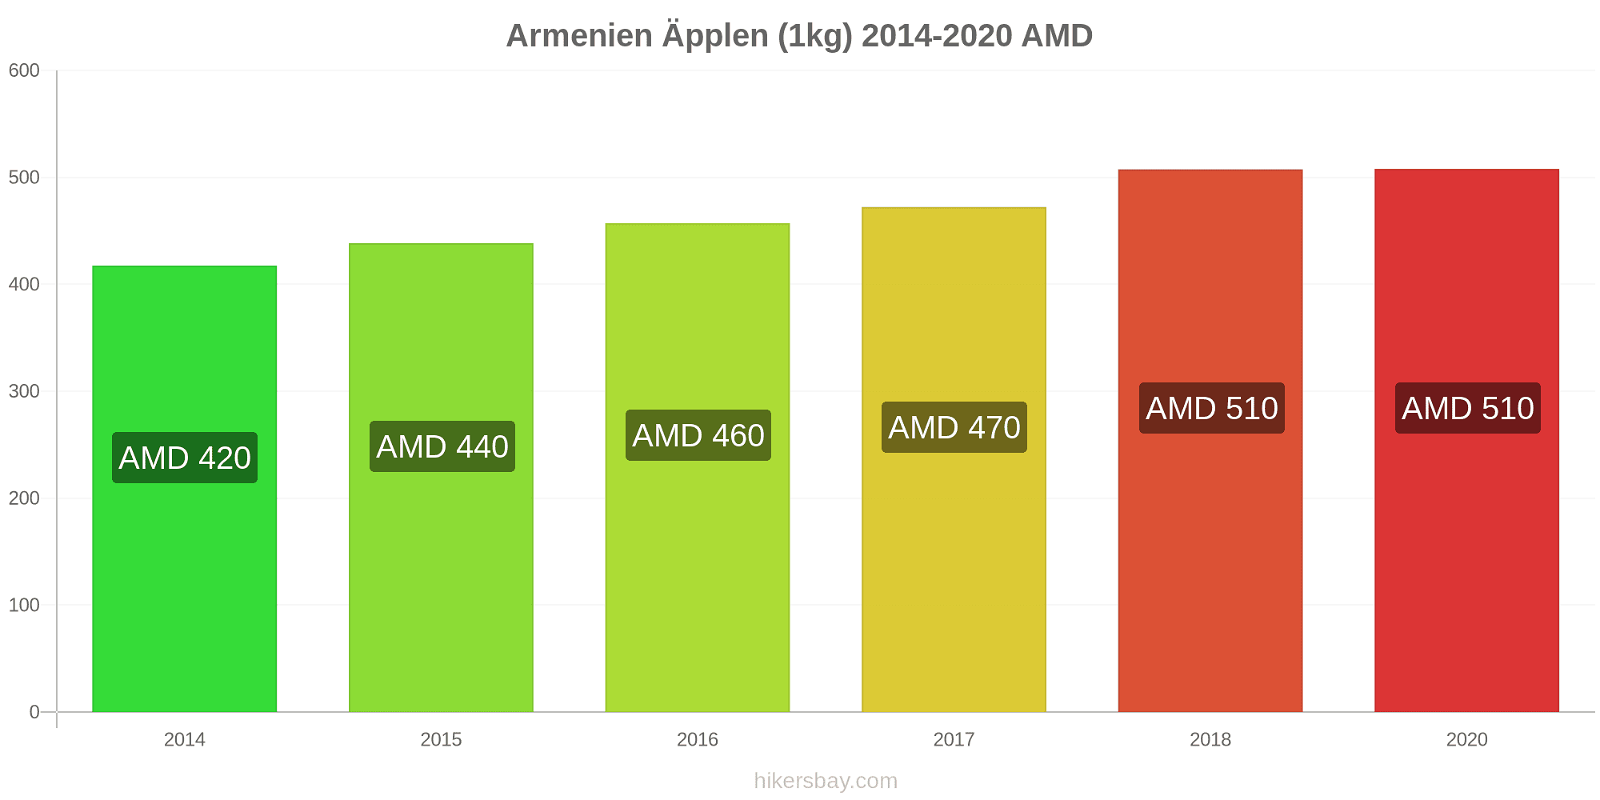 Armenien prisförändringar Äpplen (1kg) hikersbay.com